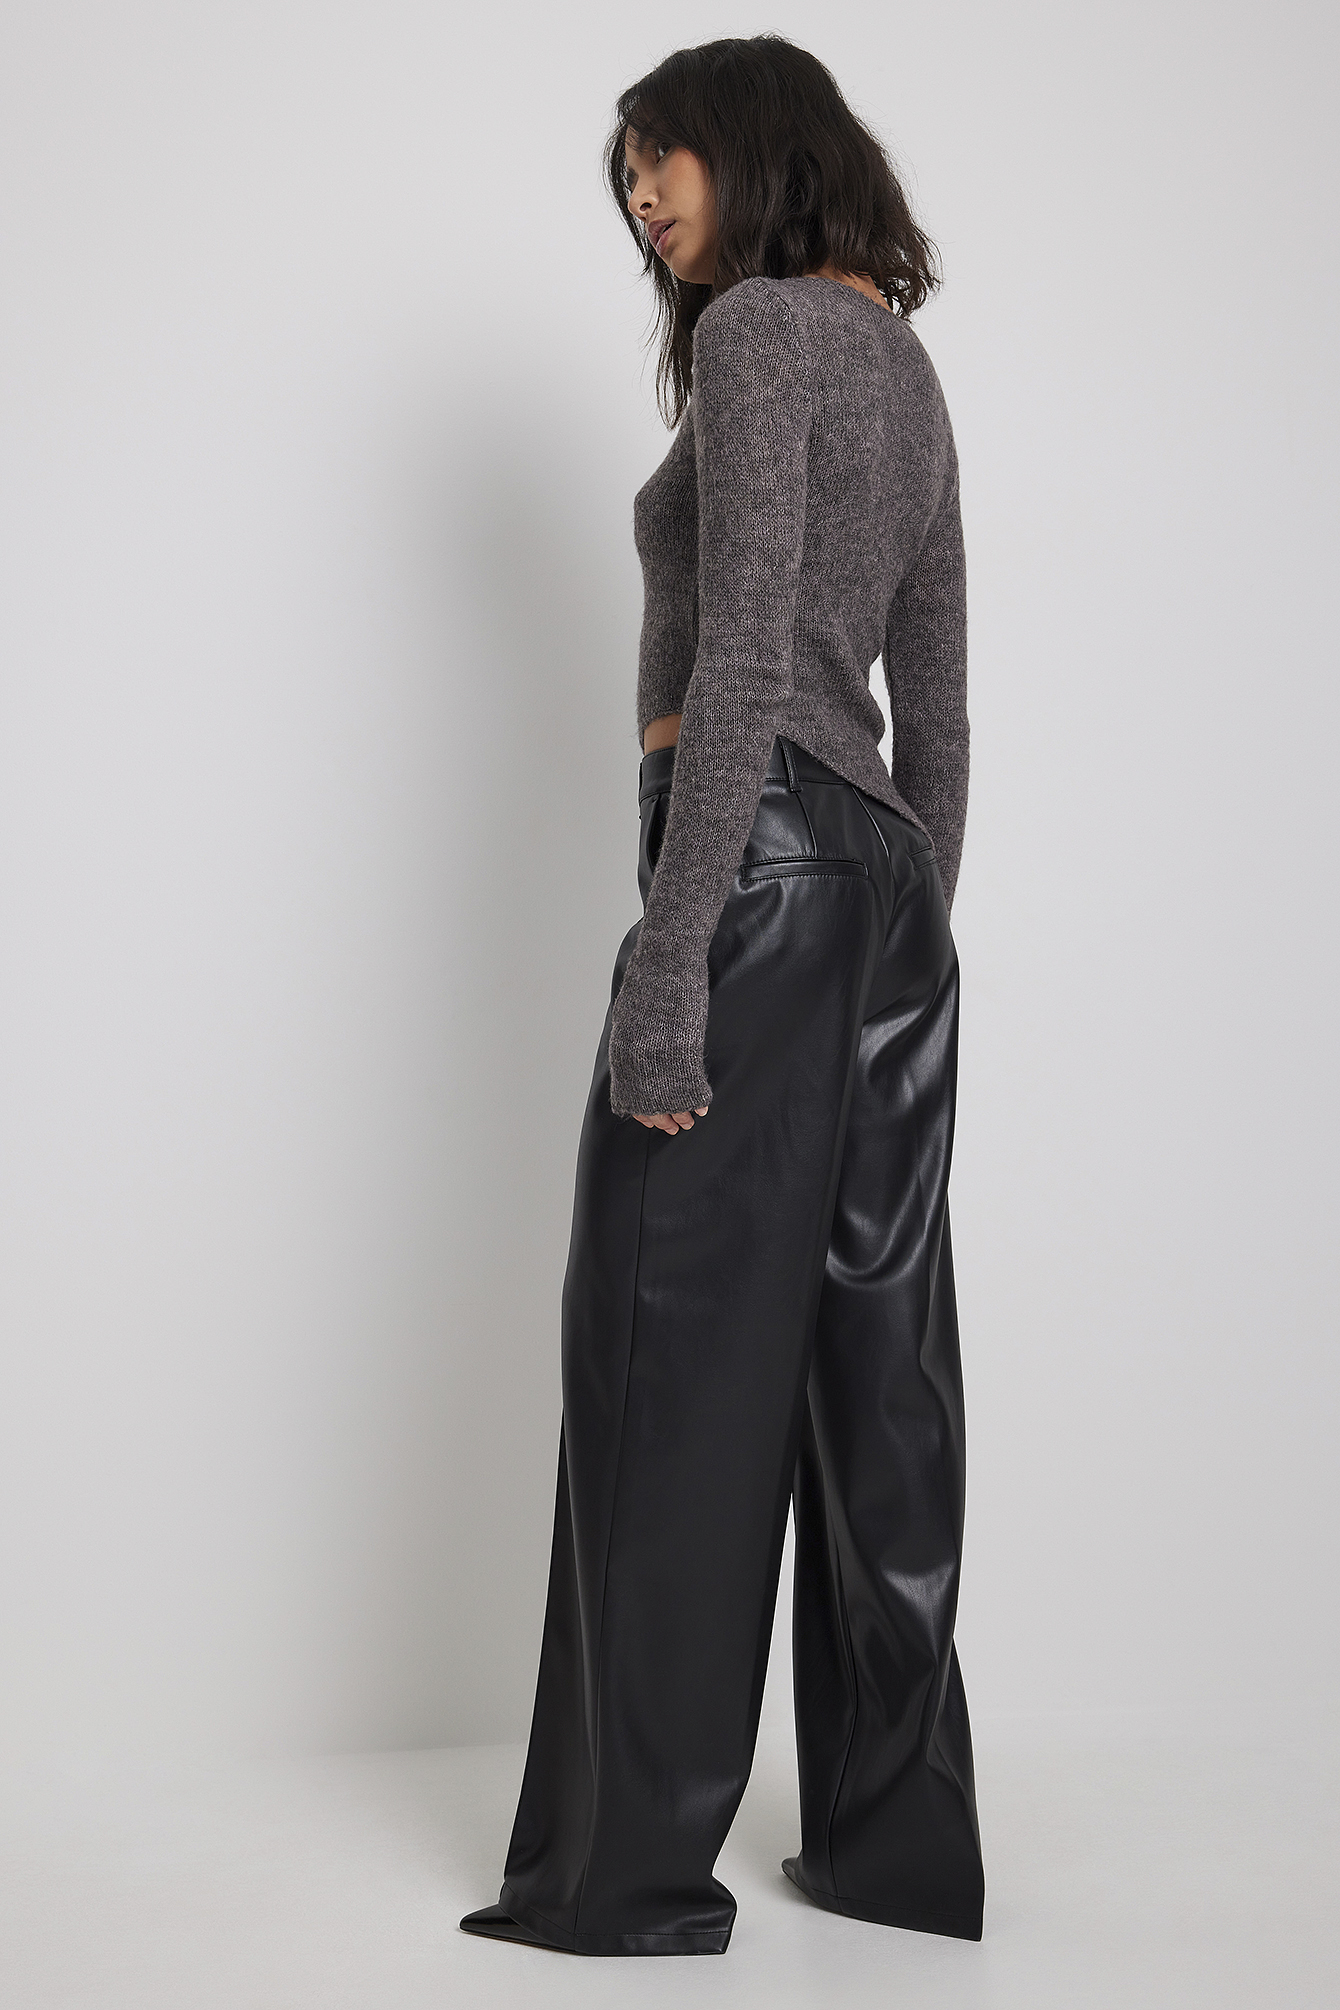 Pantalon Synthétique NA-KD en coloris Noir élégants et chinos Pantalons longs Femme Vêtements Pantalons décontractés 